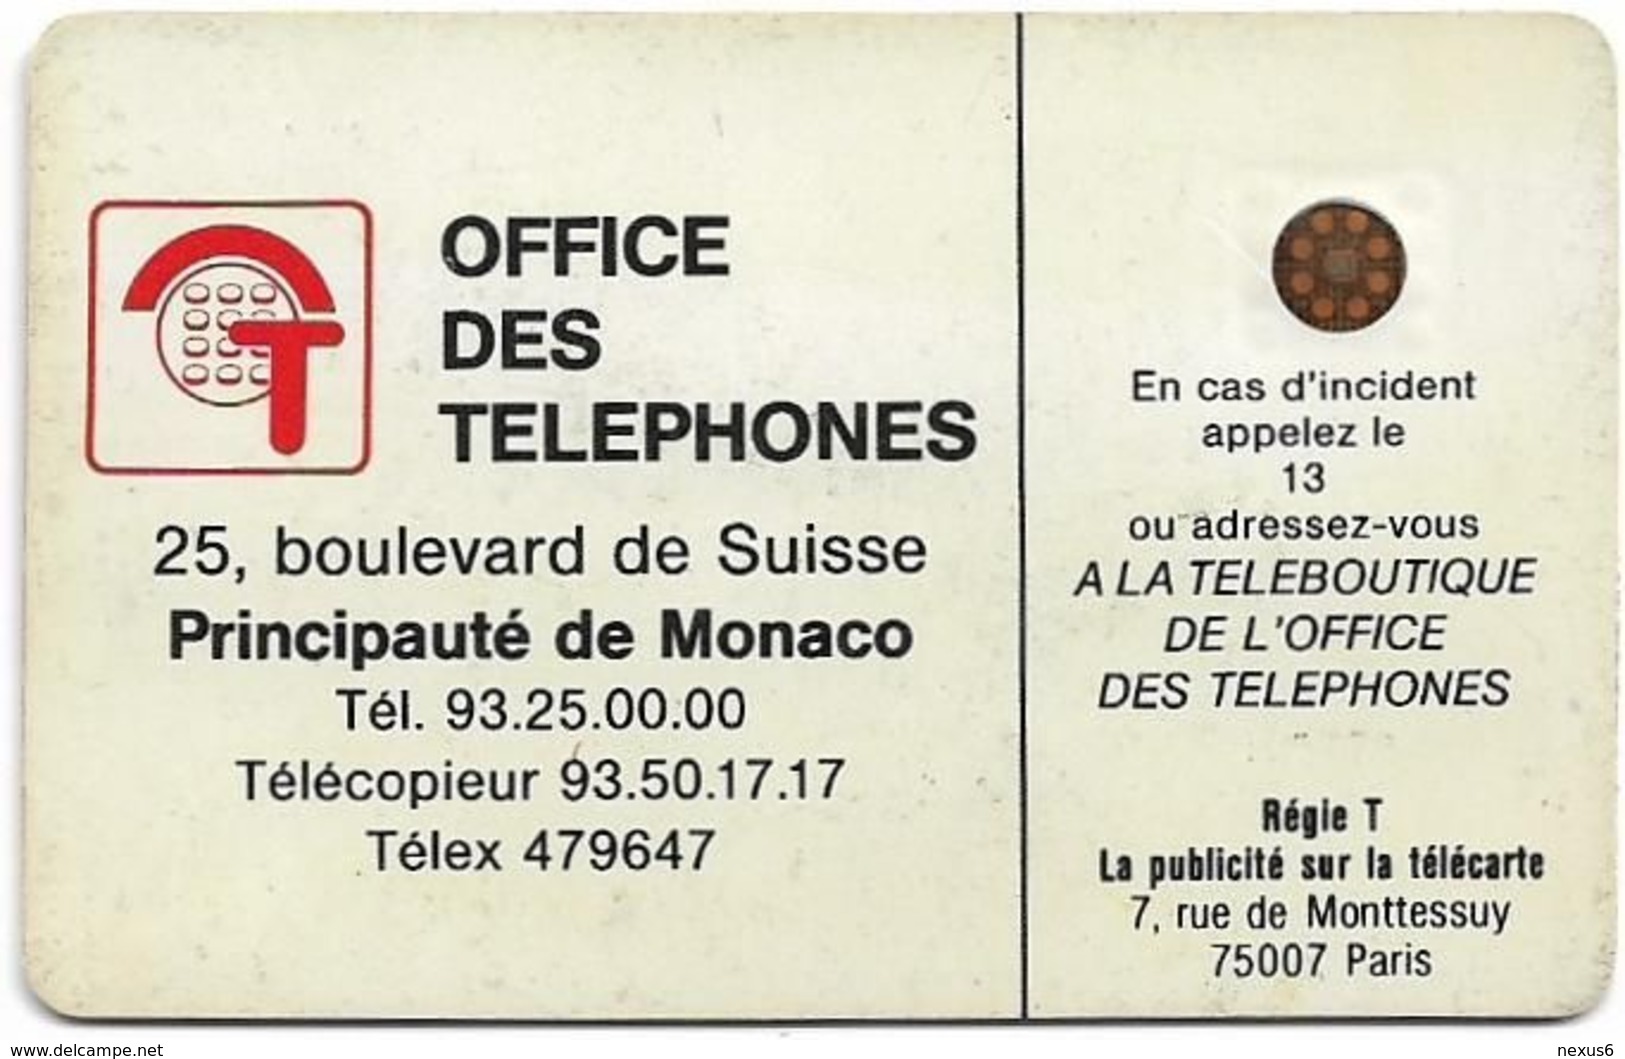 Monaco - MF1 - Rocher De Monaco - Cn. 106772 - 08.1989, SC4 GB, 50Units, 10.200ex, Used - Monaco